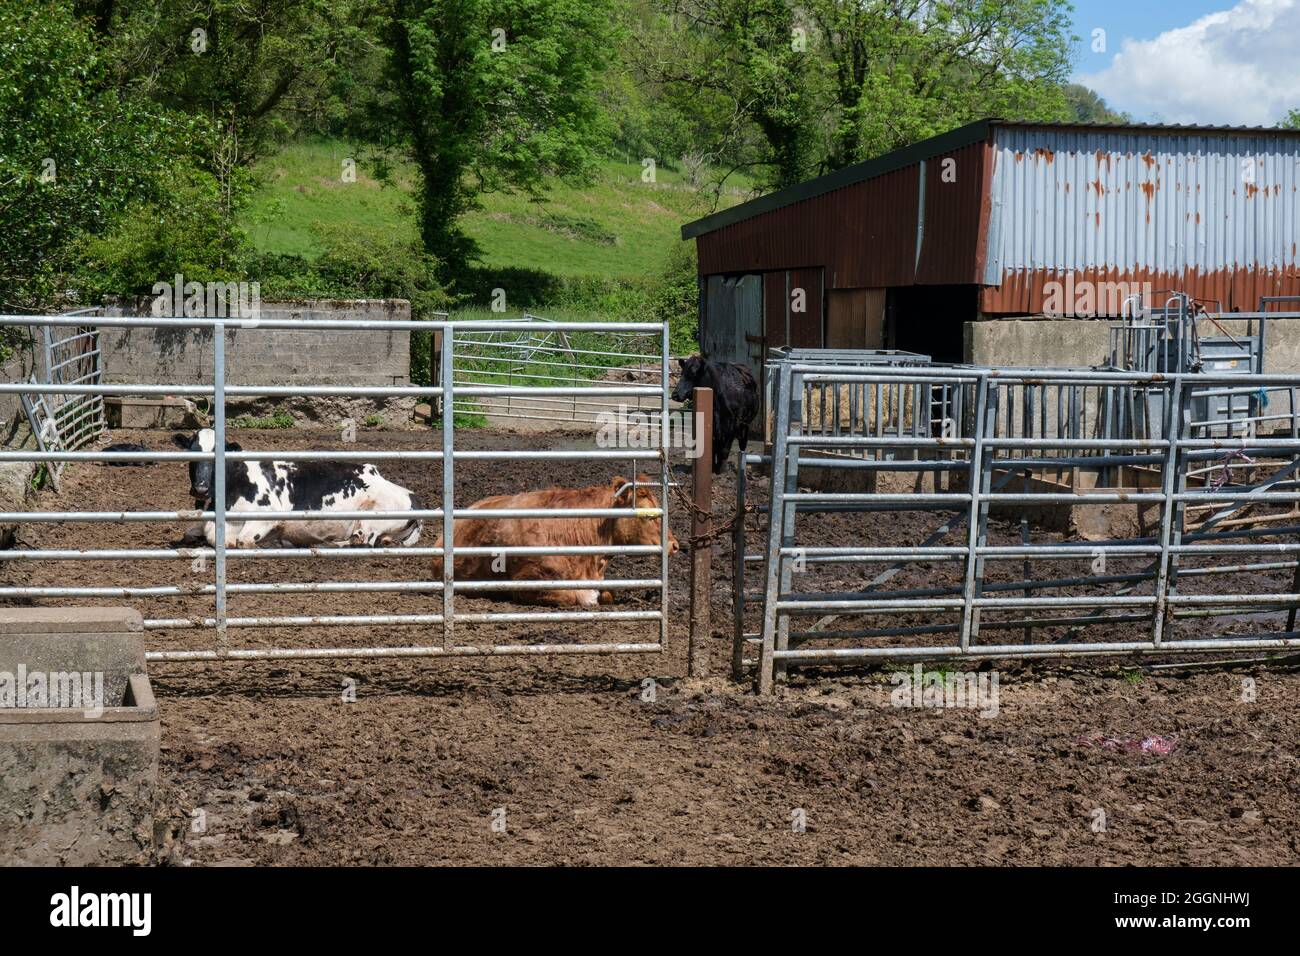 Pequeña granja rural con dos cabezas de ganado en reposo Foto de stock